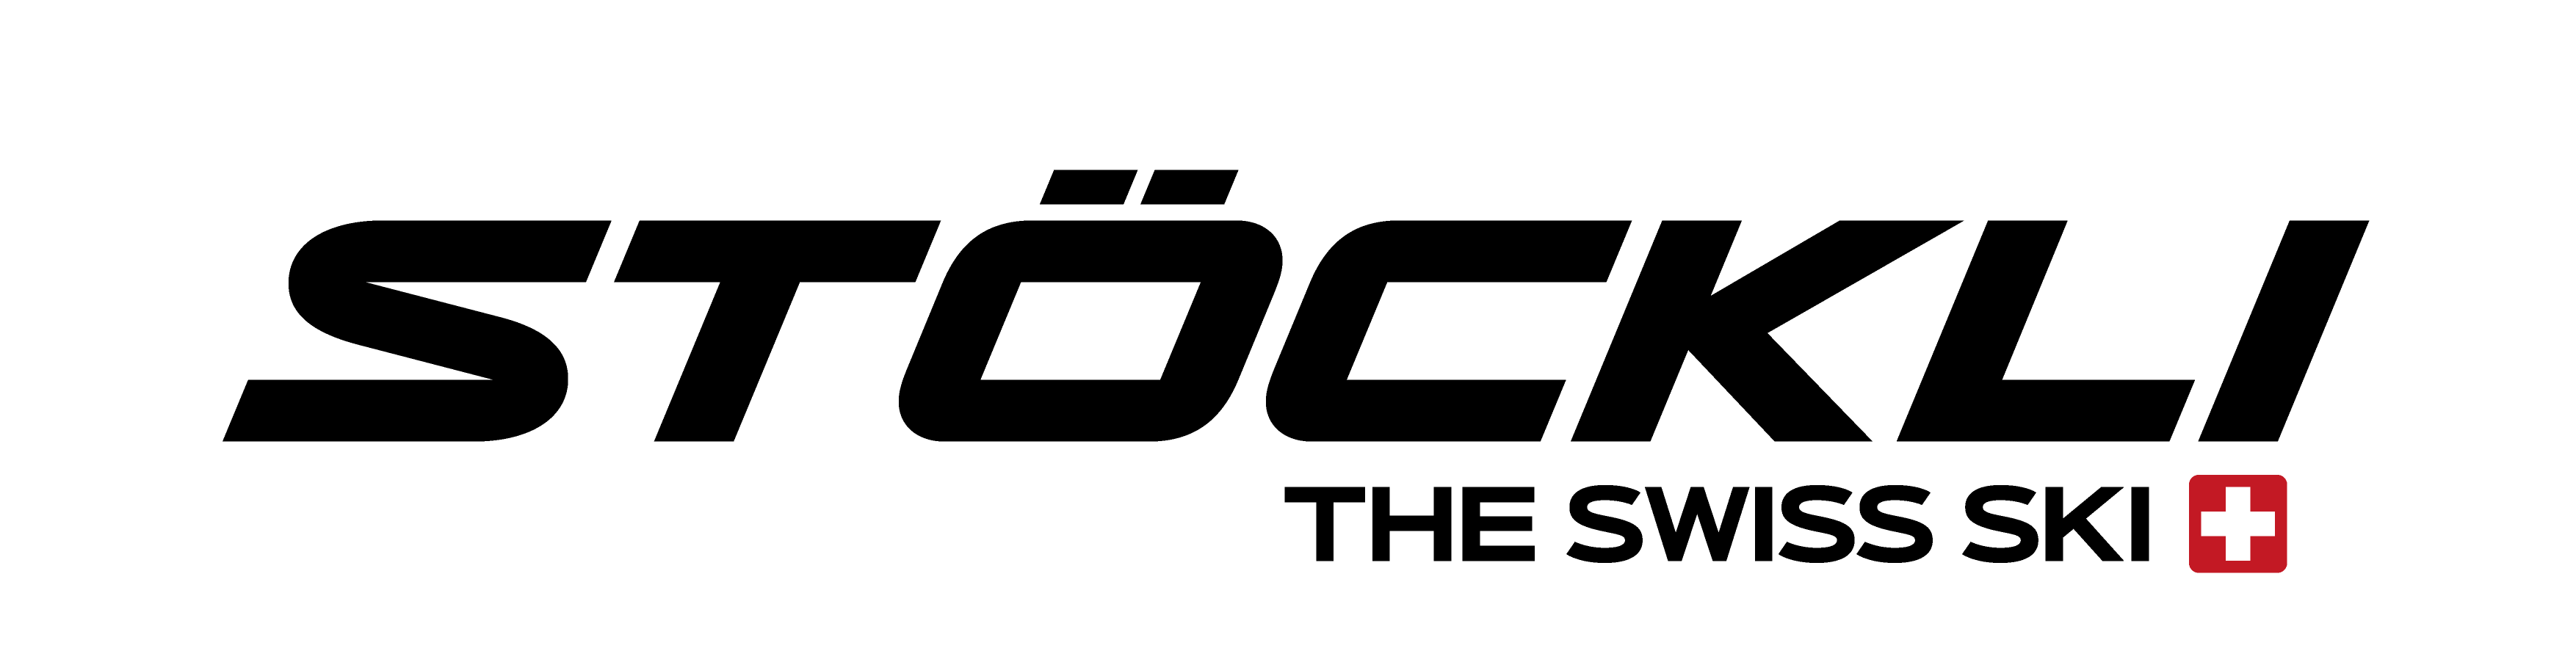 Logo de la marque Stockli